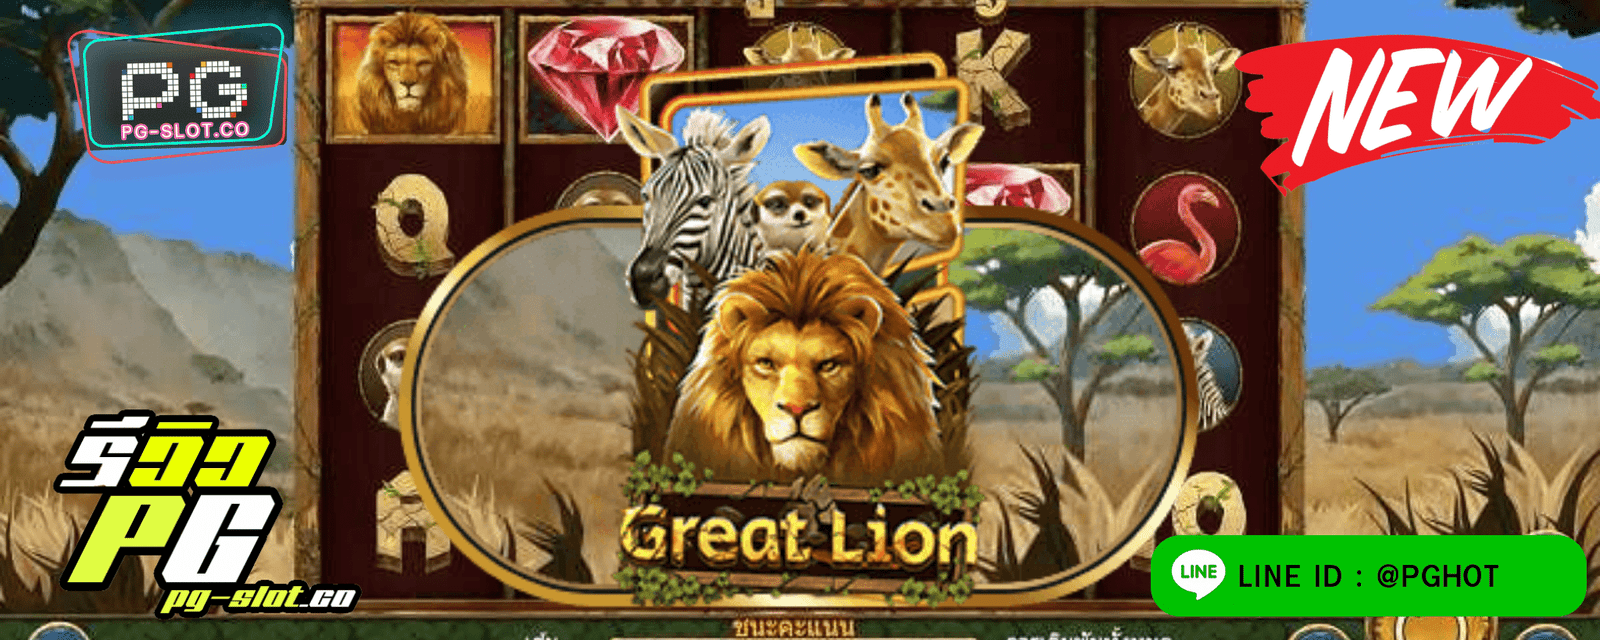 ทดลองเล่นสล็อต Great Lion